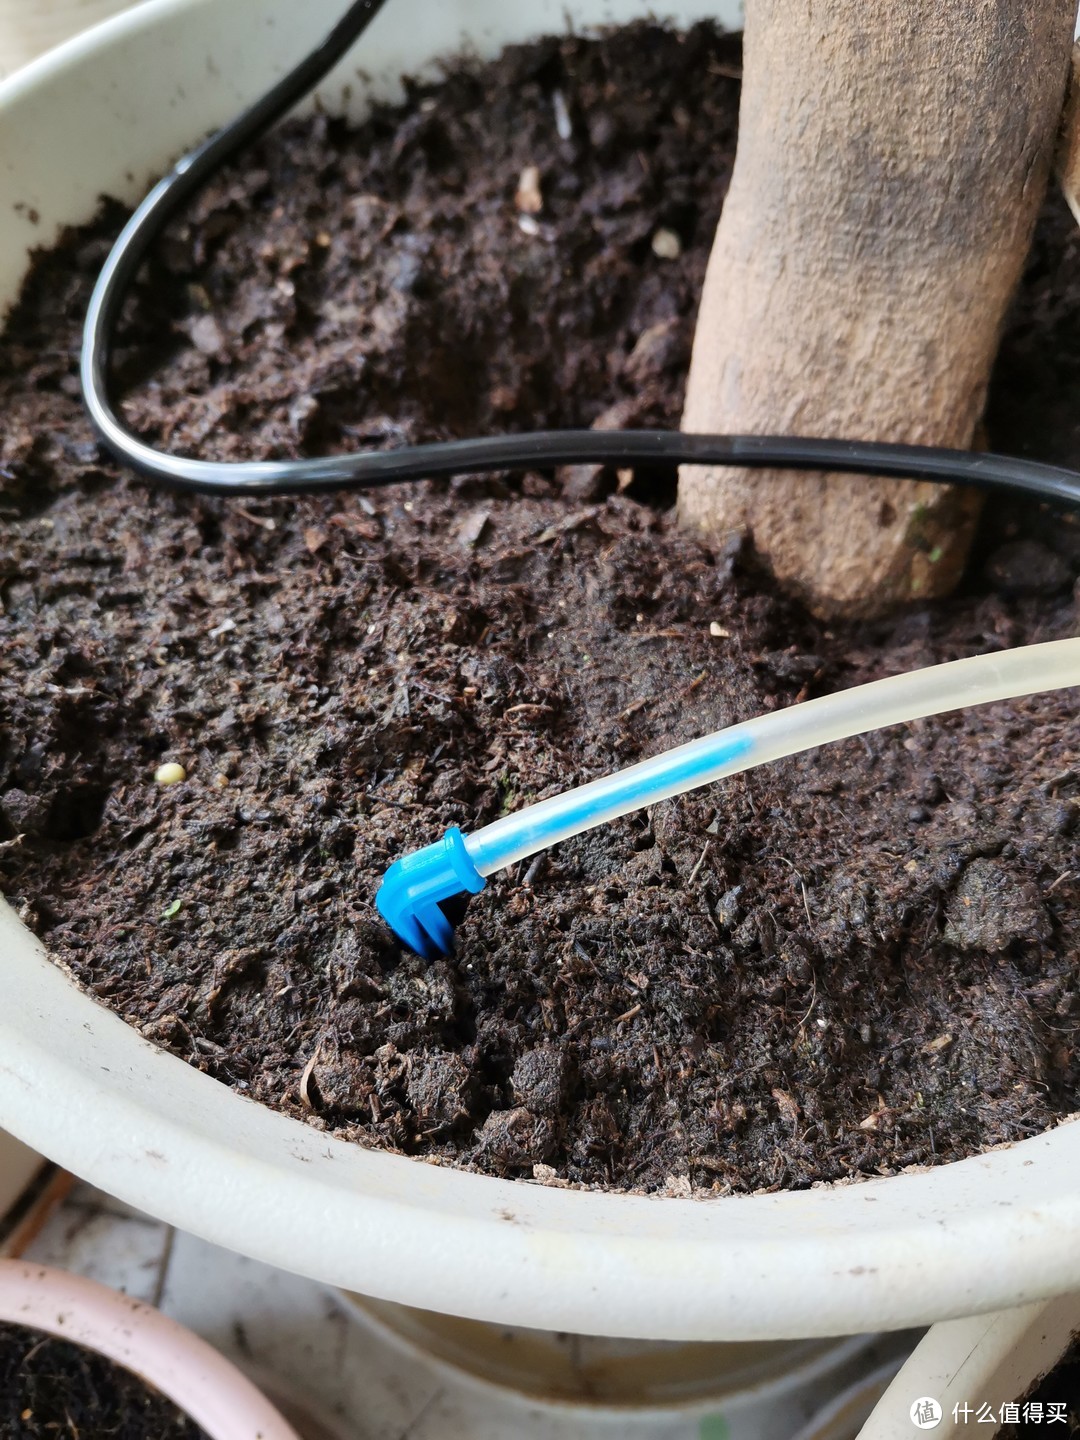 适合懒人养花的自动智能浇水管家:卡默尔 “智灌宝”自动智能浇花系统